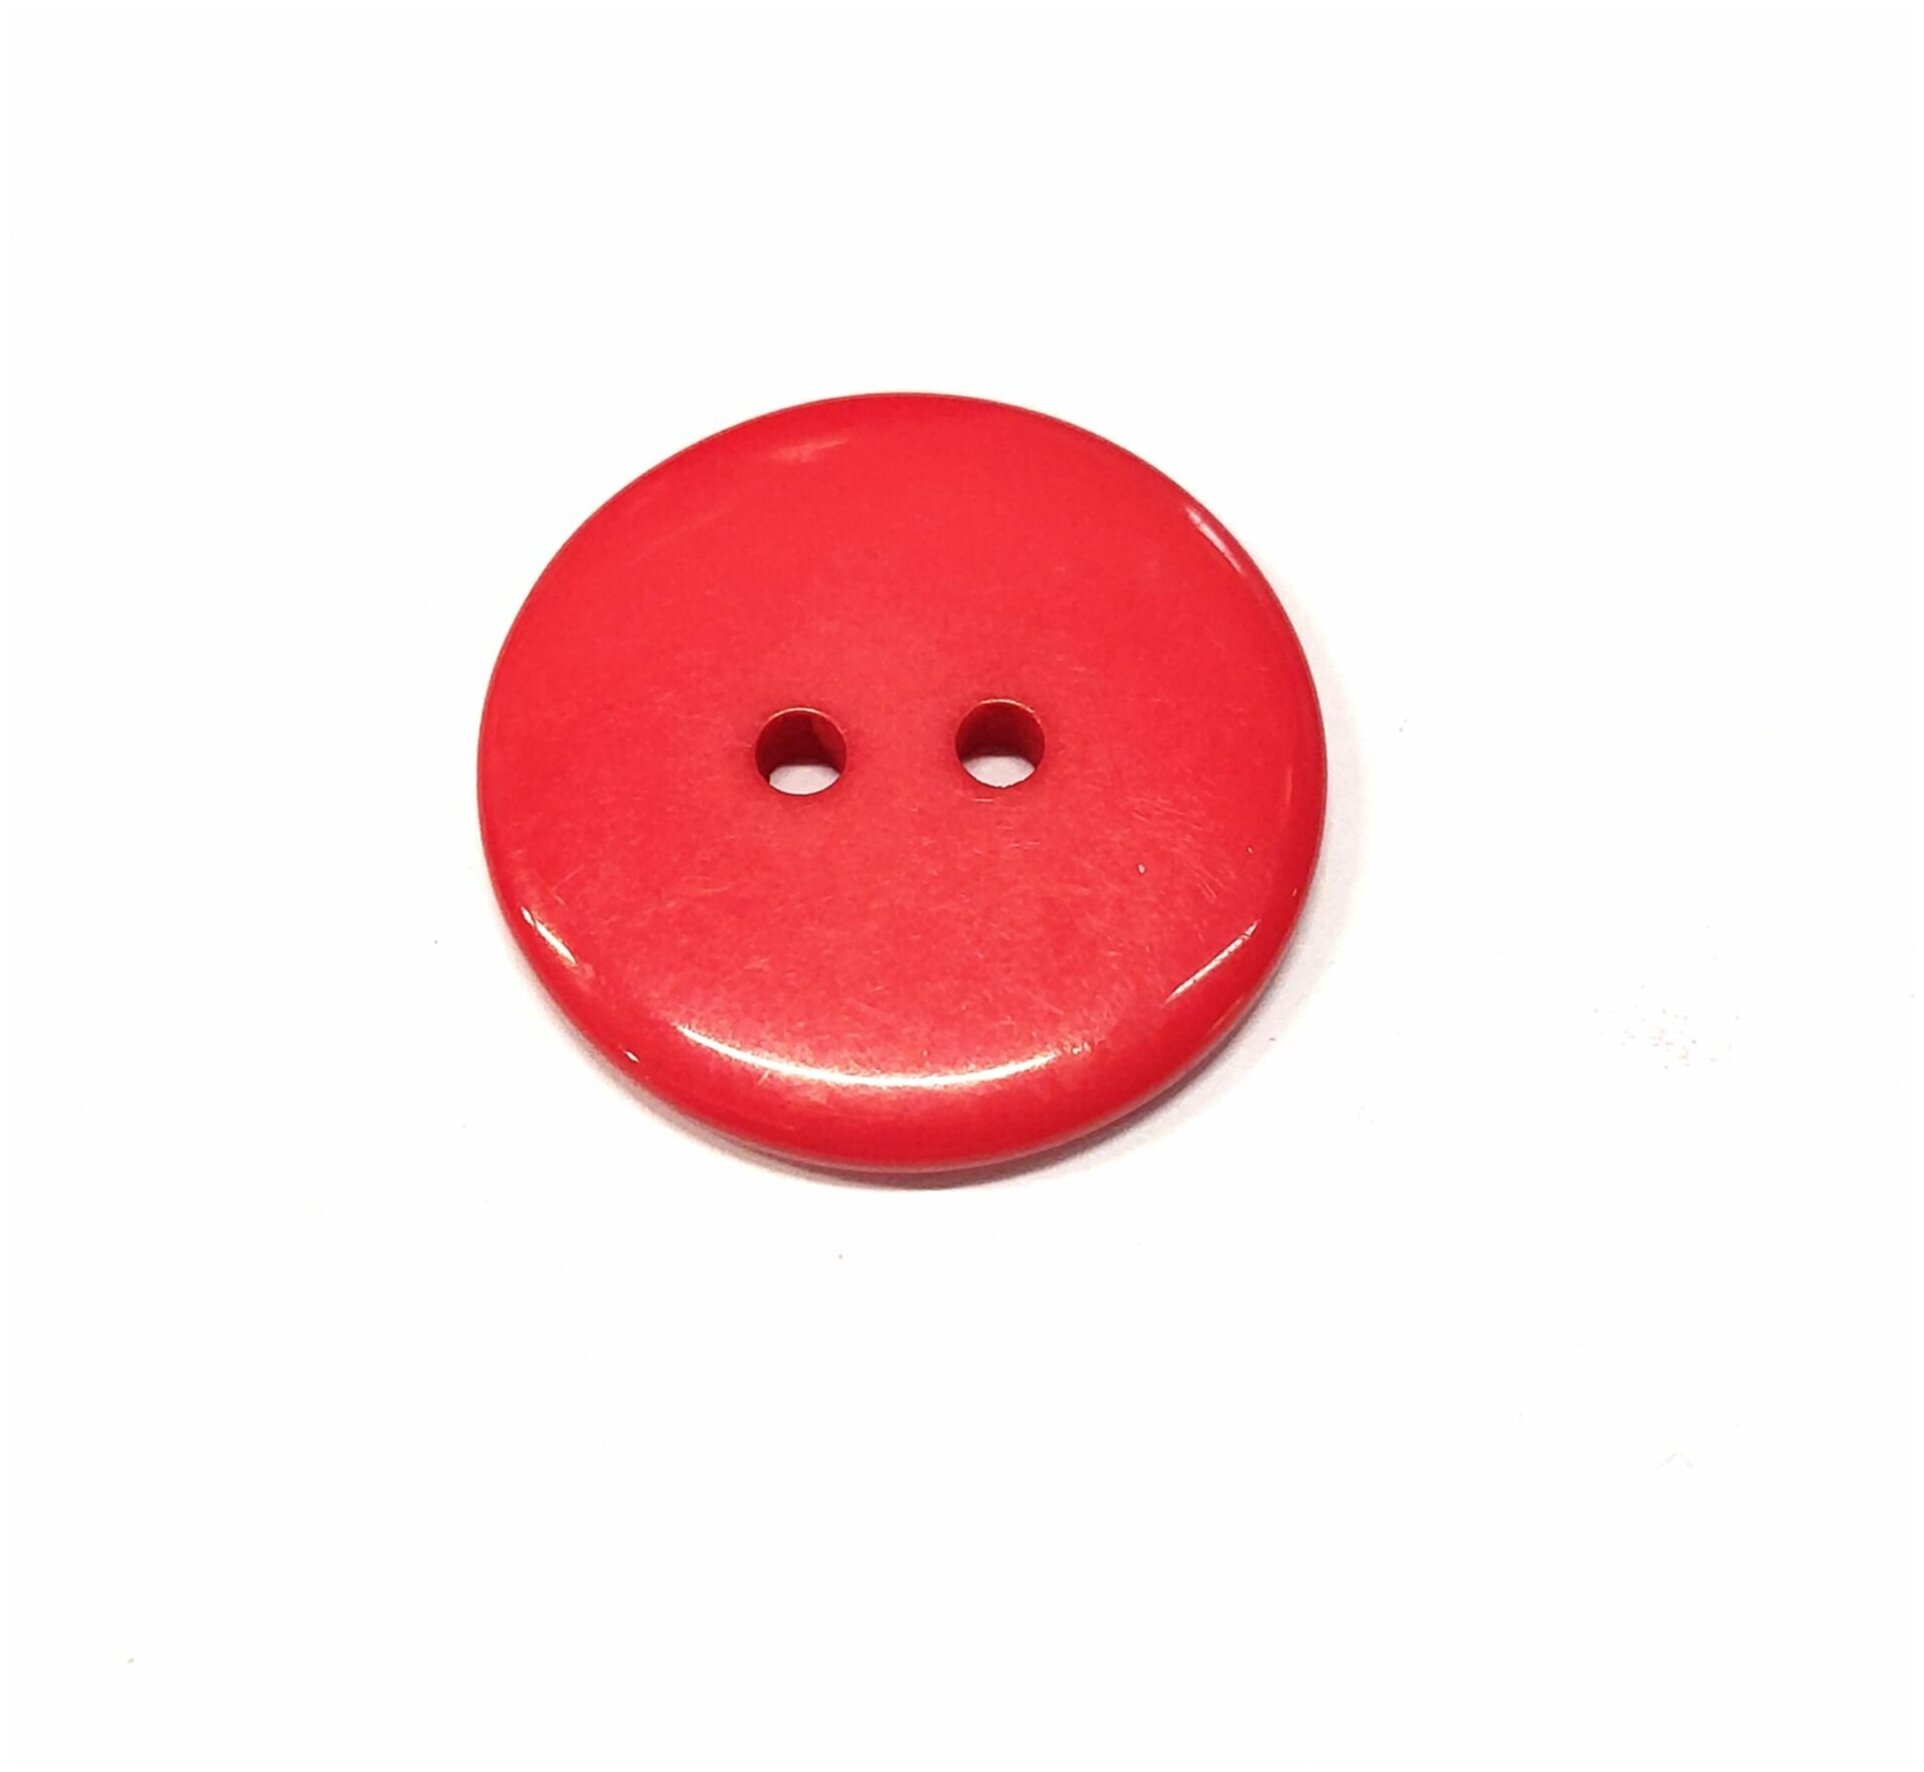 Пуговицы пластиковые красные с двумя отверстиями, 23мм - 10 штук.